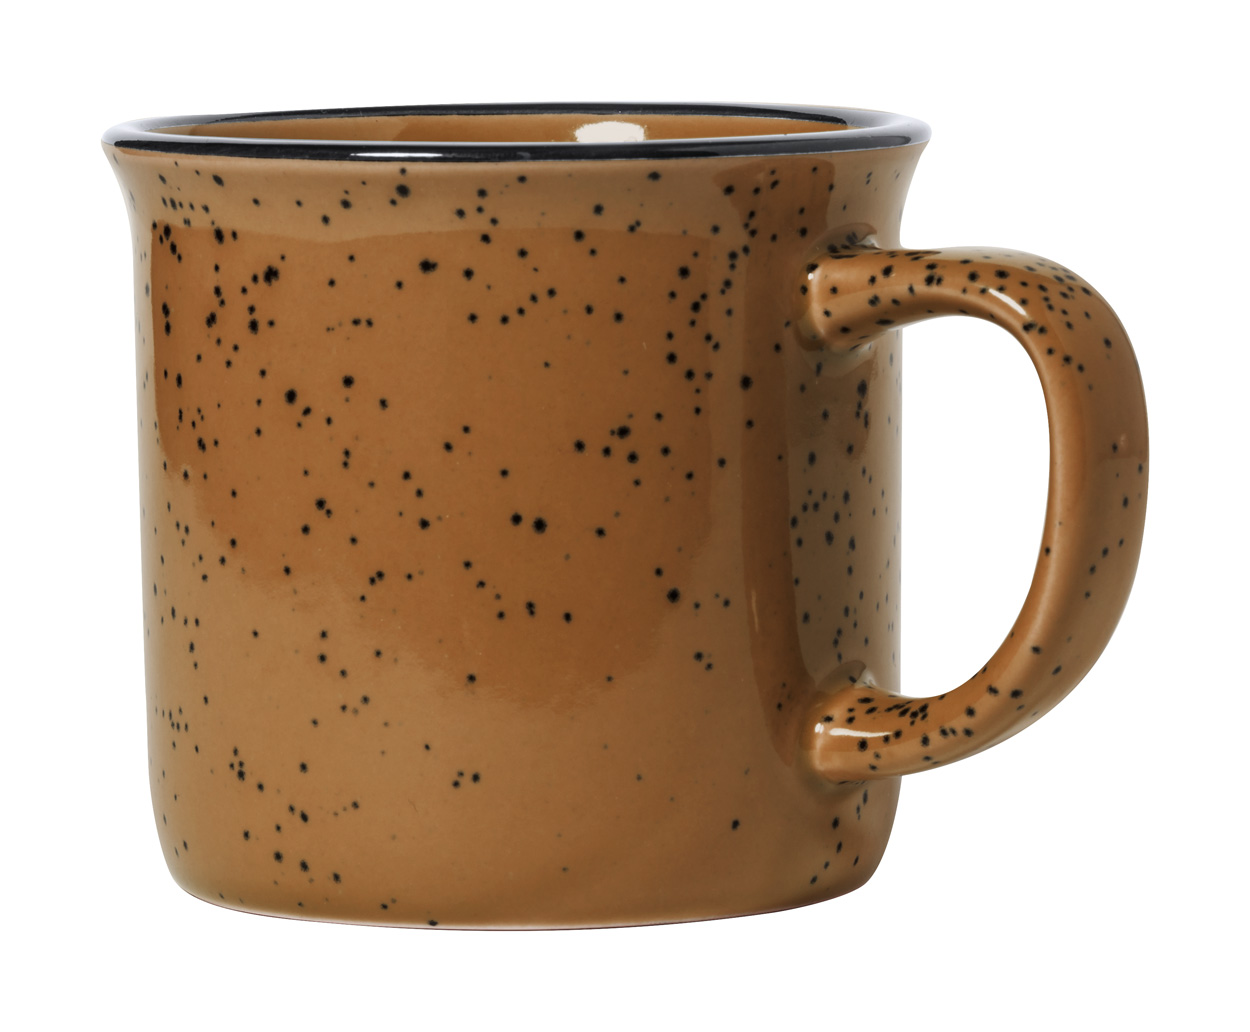 Lanay retro mug - brown